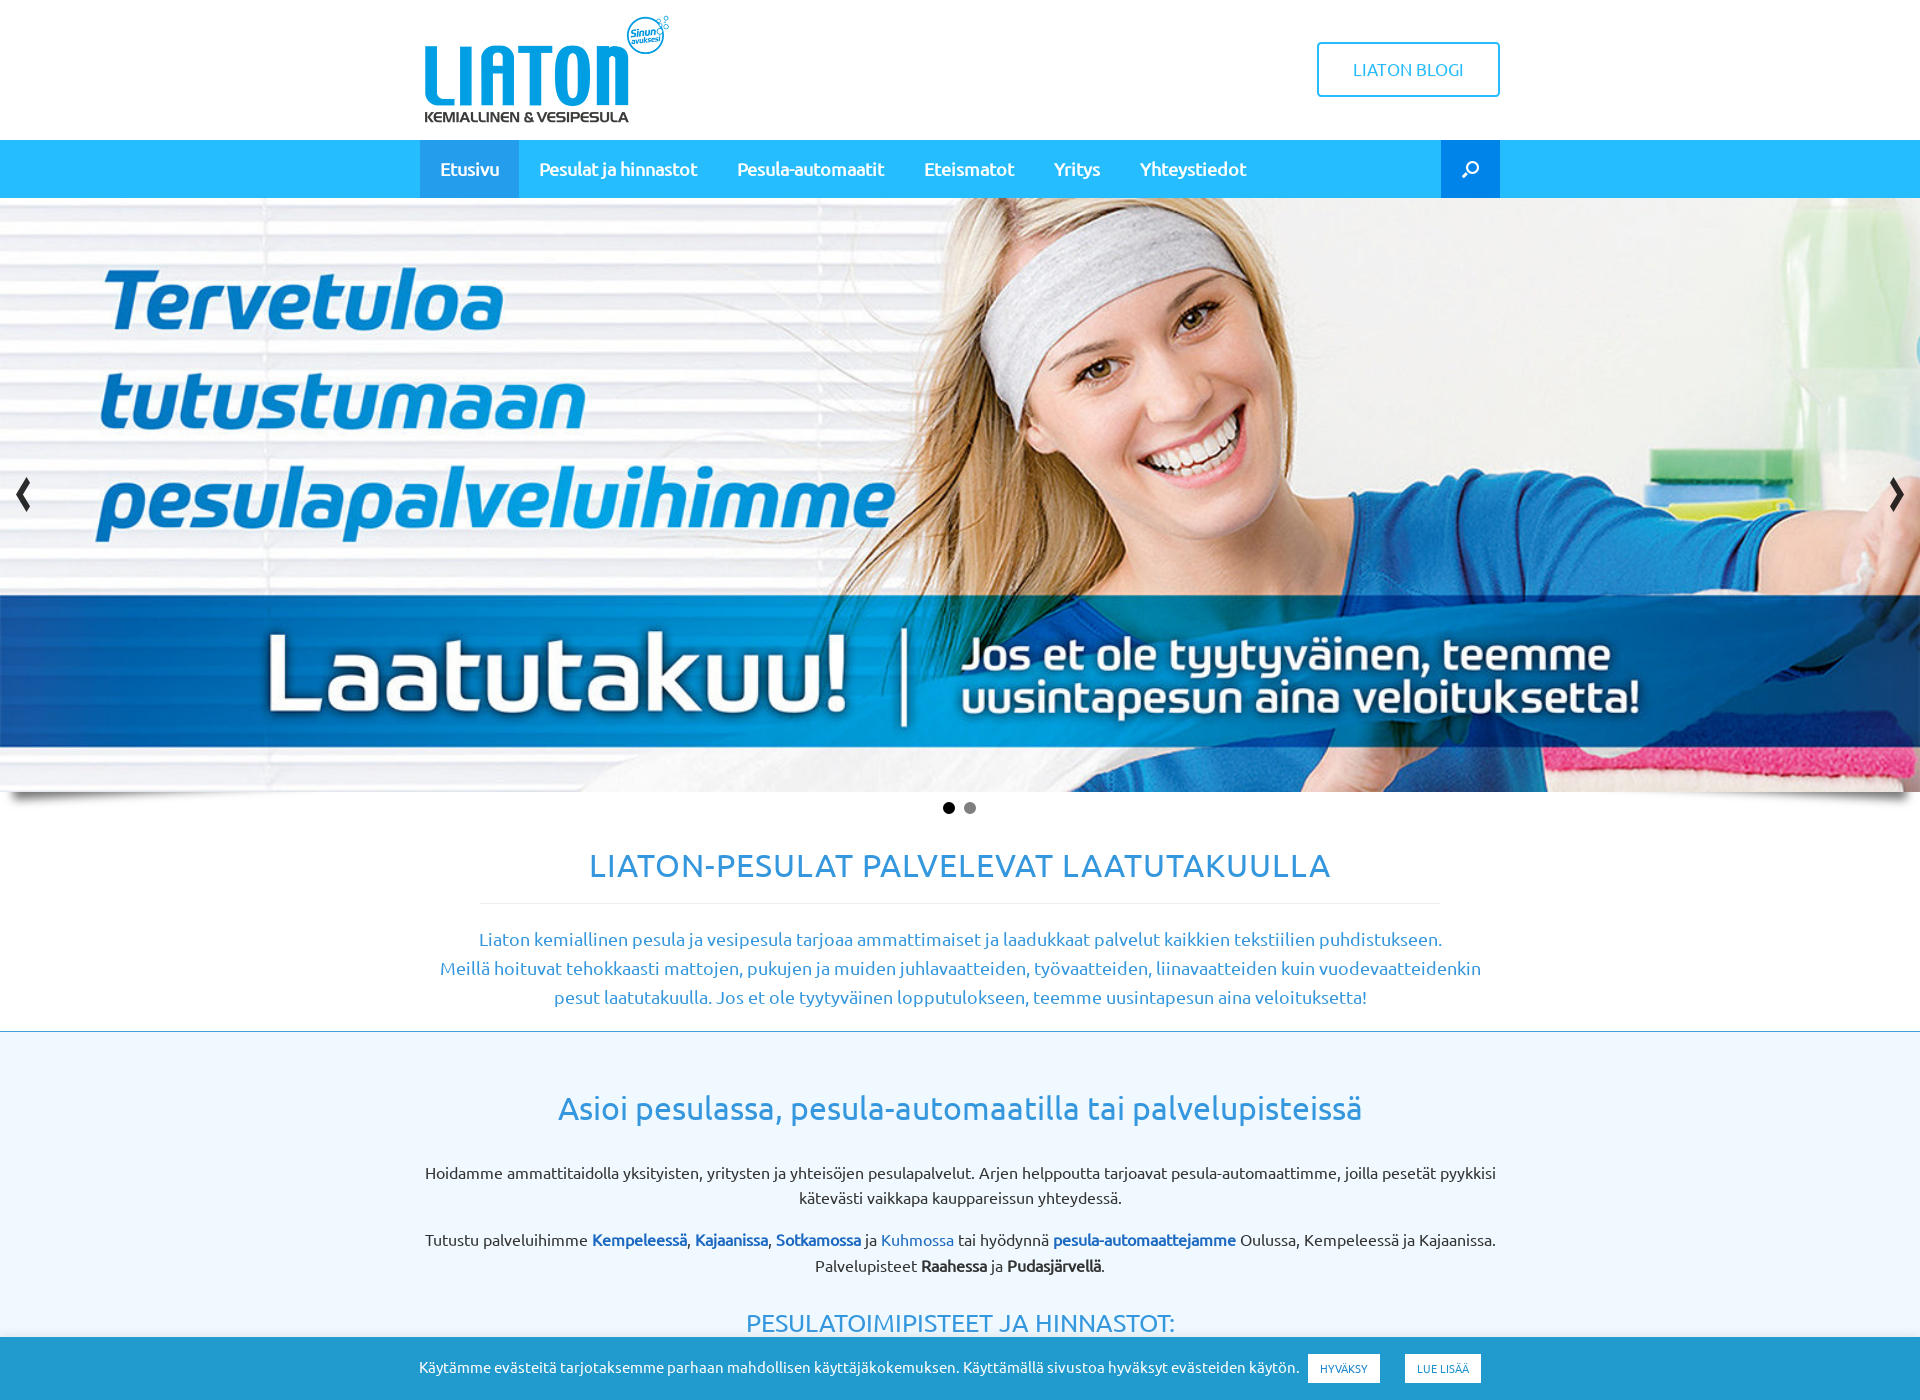 Näyttökuva liaton.fi